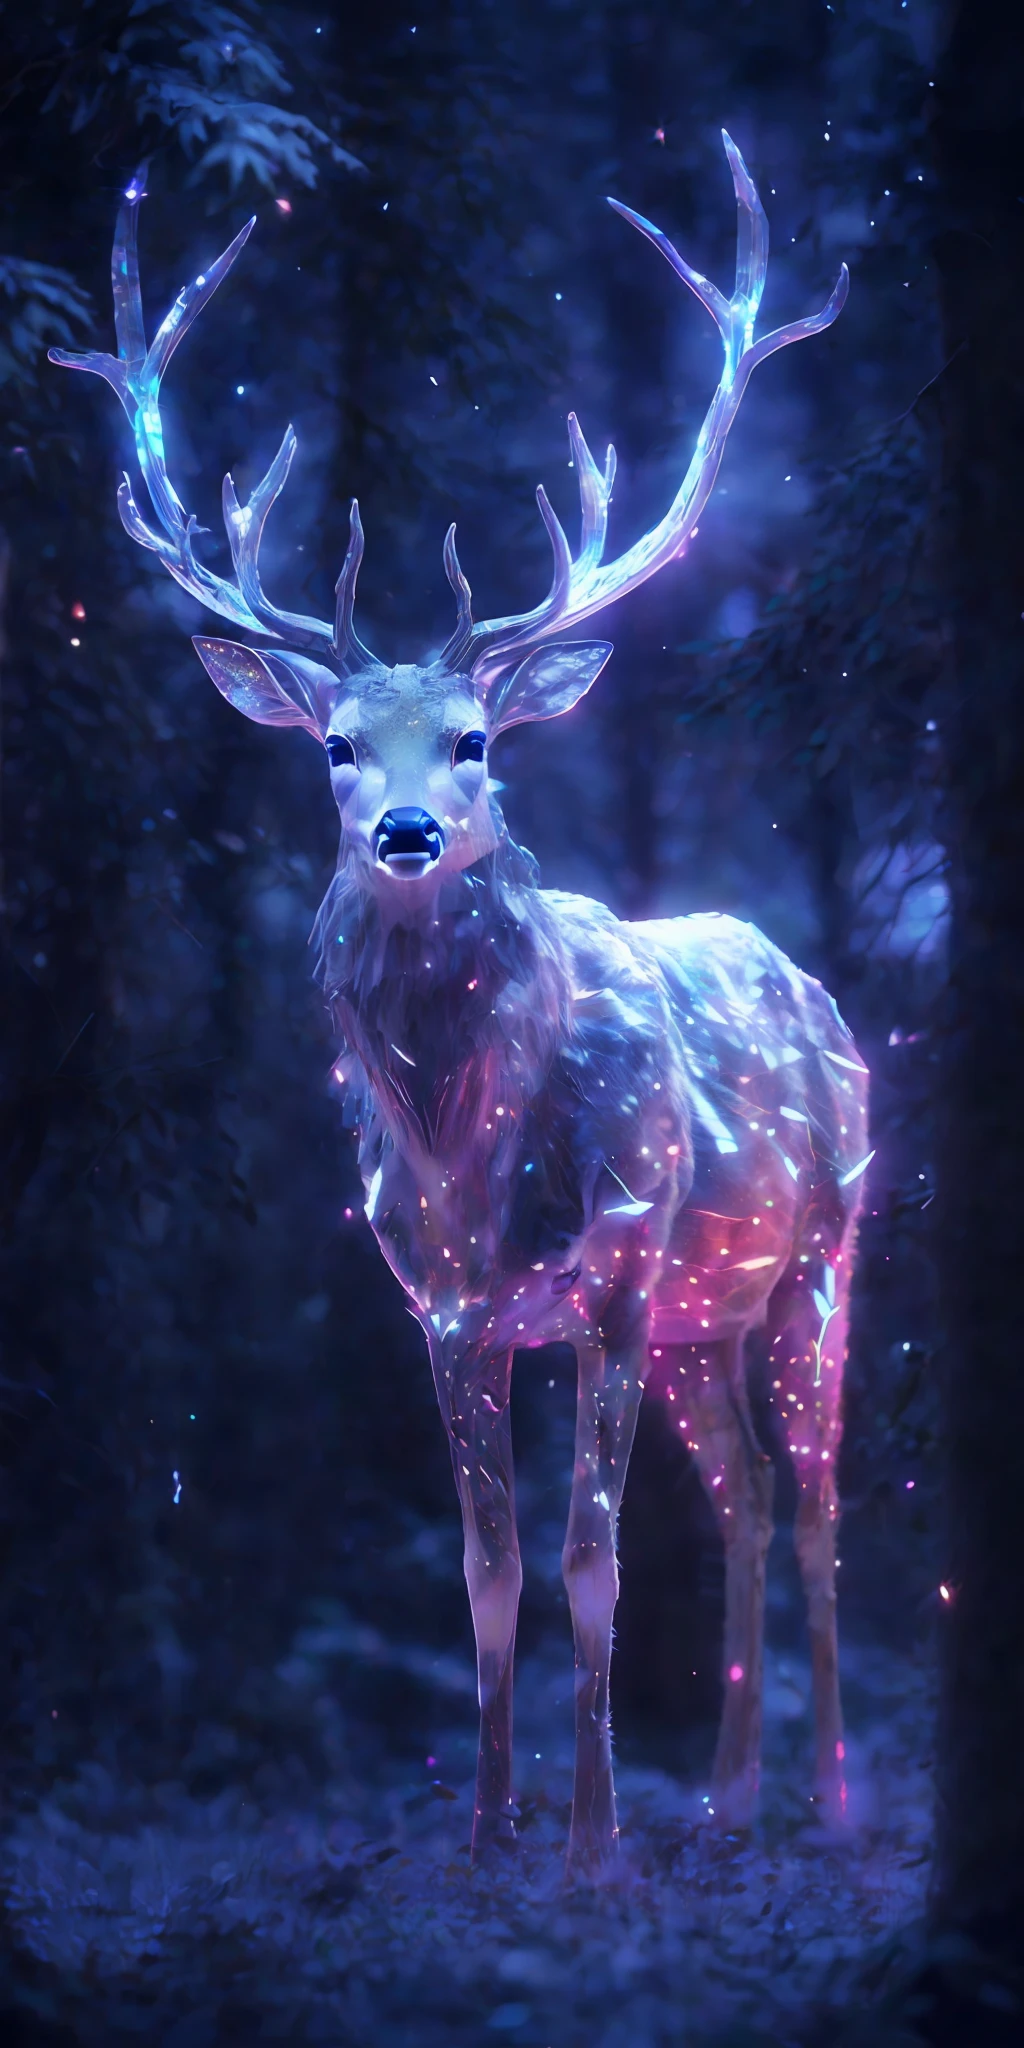 森林里一只鹿角发光的鹿的特写, 3d 數位藝術 4k, 數位藝術動物照片, 數位藝術作品 4 k, 全息生物, 4k 高度詳細的數位藝術, 8k 高品質細節藝術, 4k 细致数码艺术, 8K超寫實動物, 數位藝術 4k, 數位藝術 4k, 詳細的數位 3D 藝術